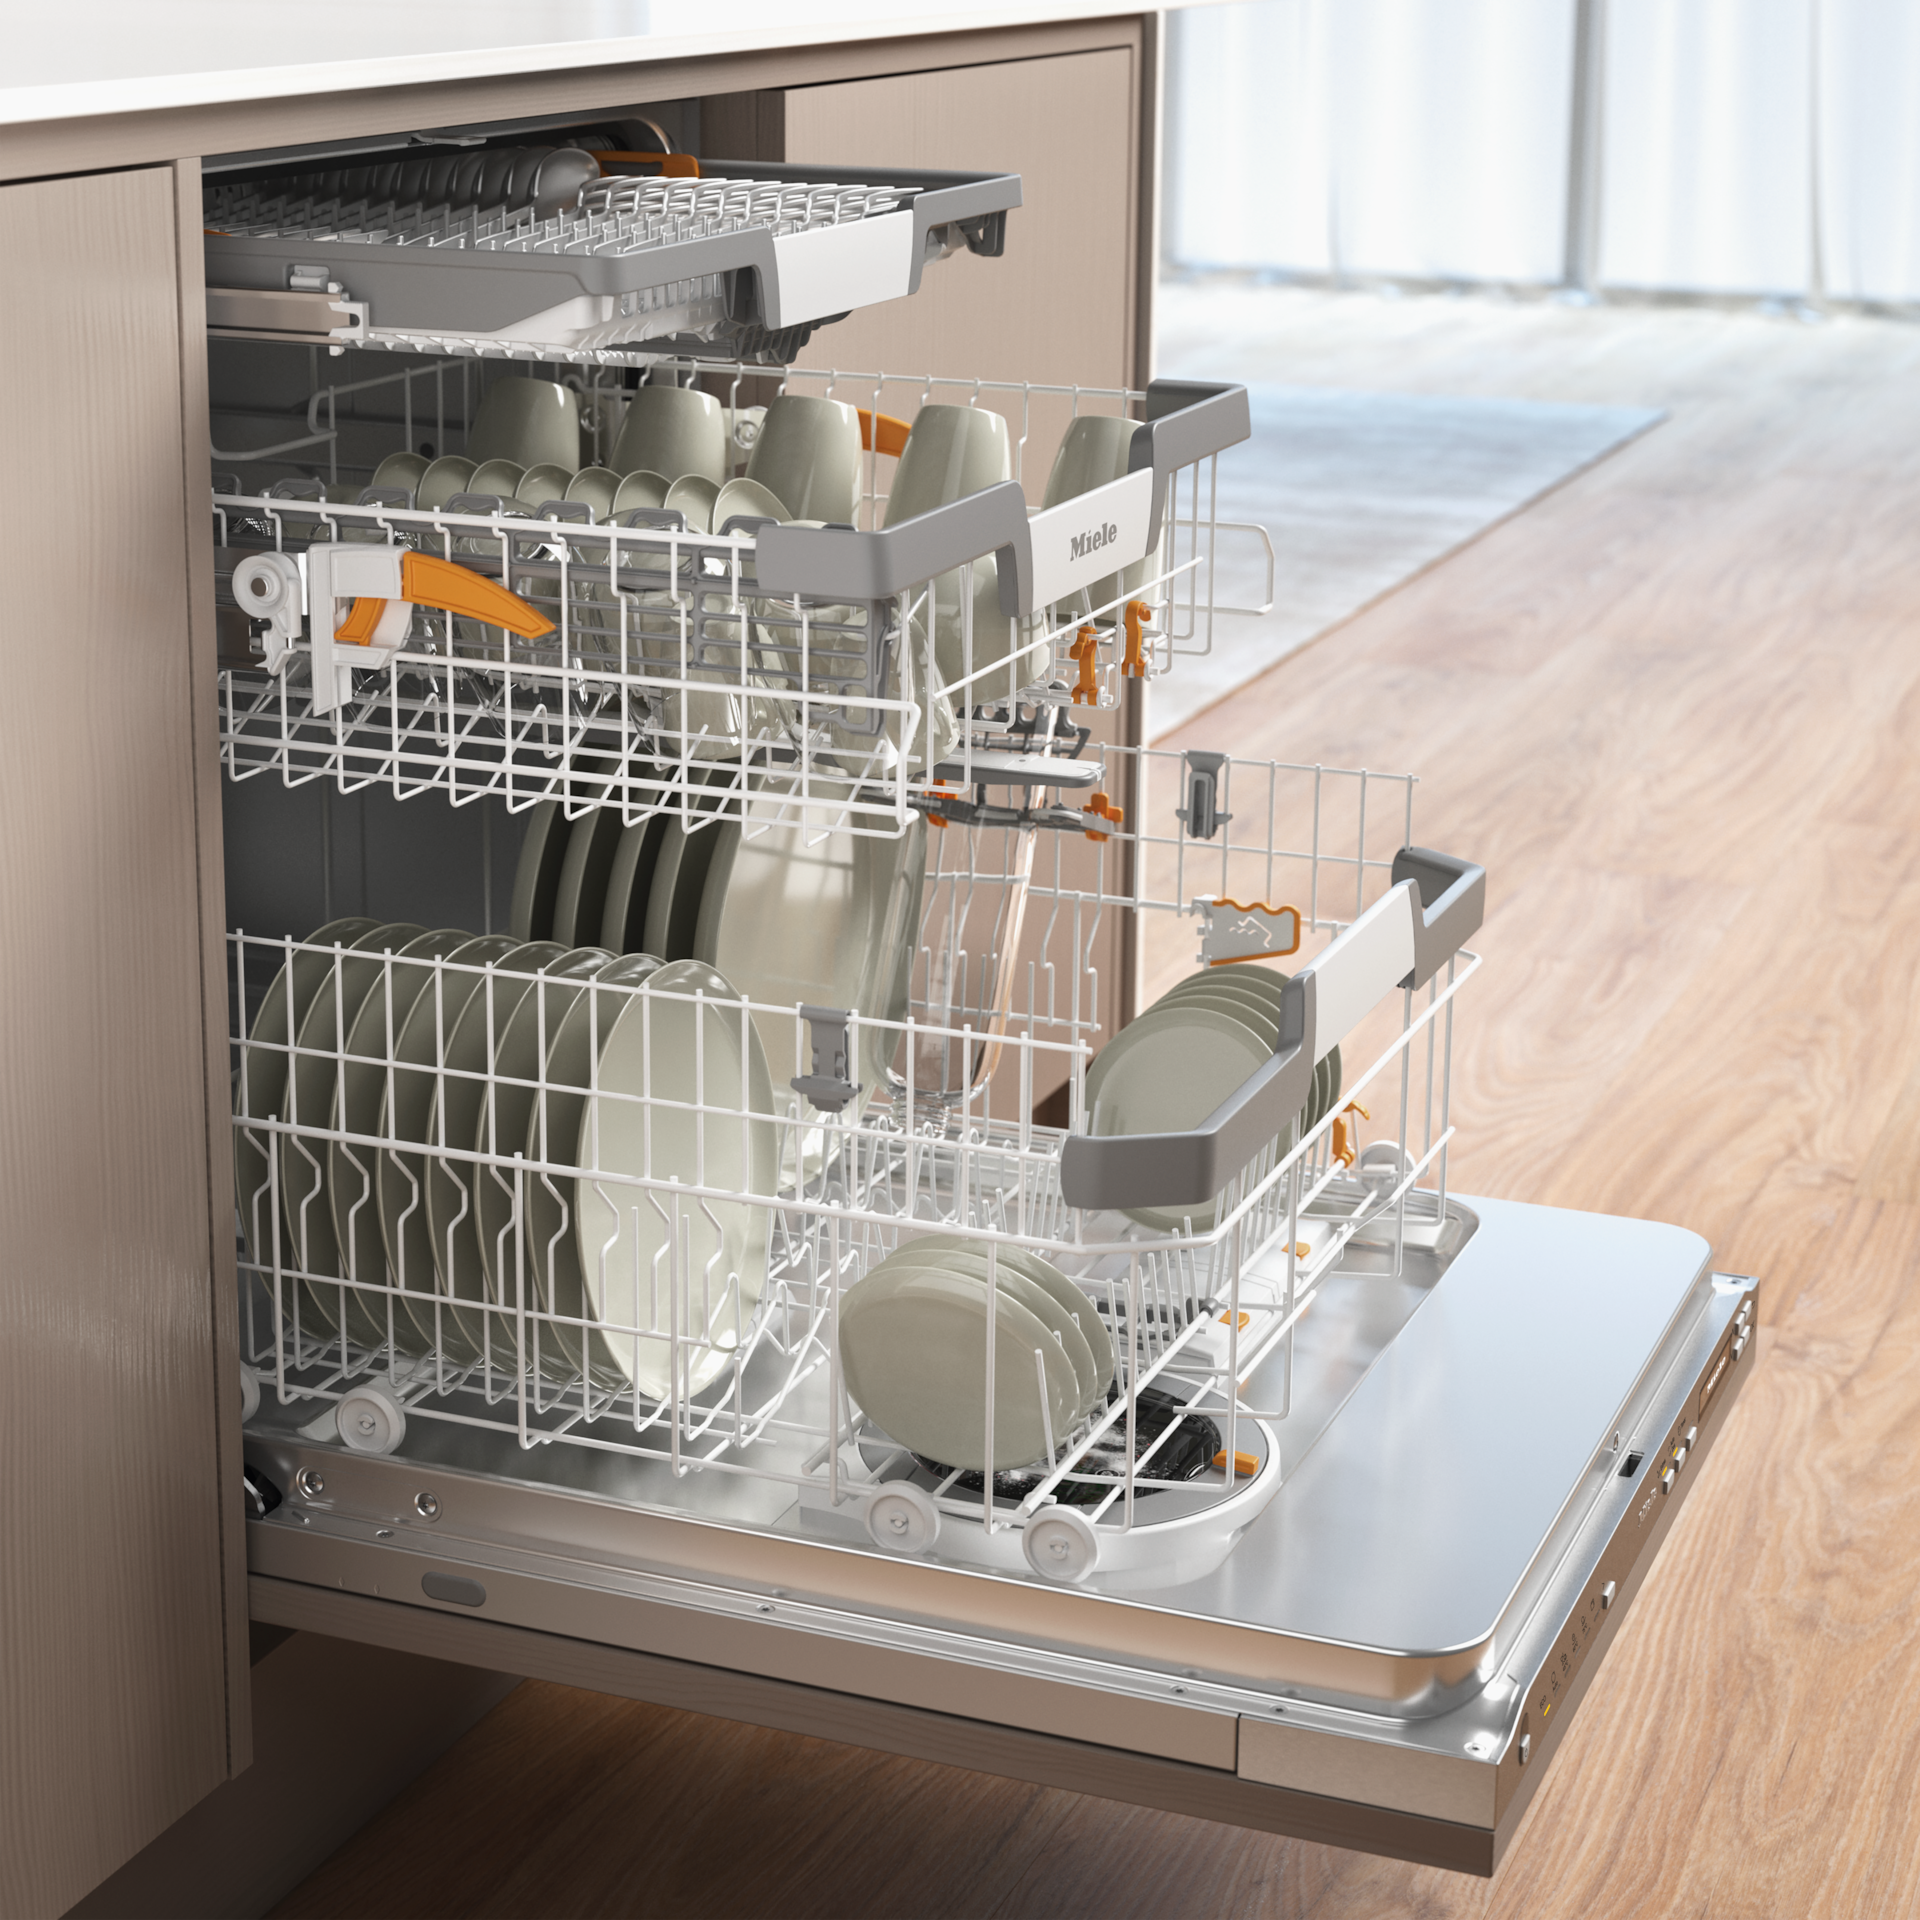 Dishwashers - G 7191 SCVi AD 125 Ed. - 3